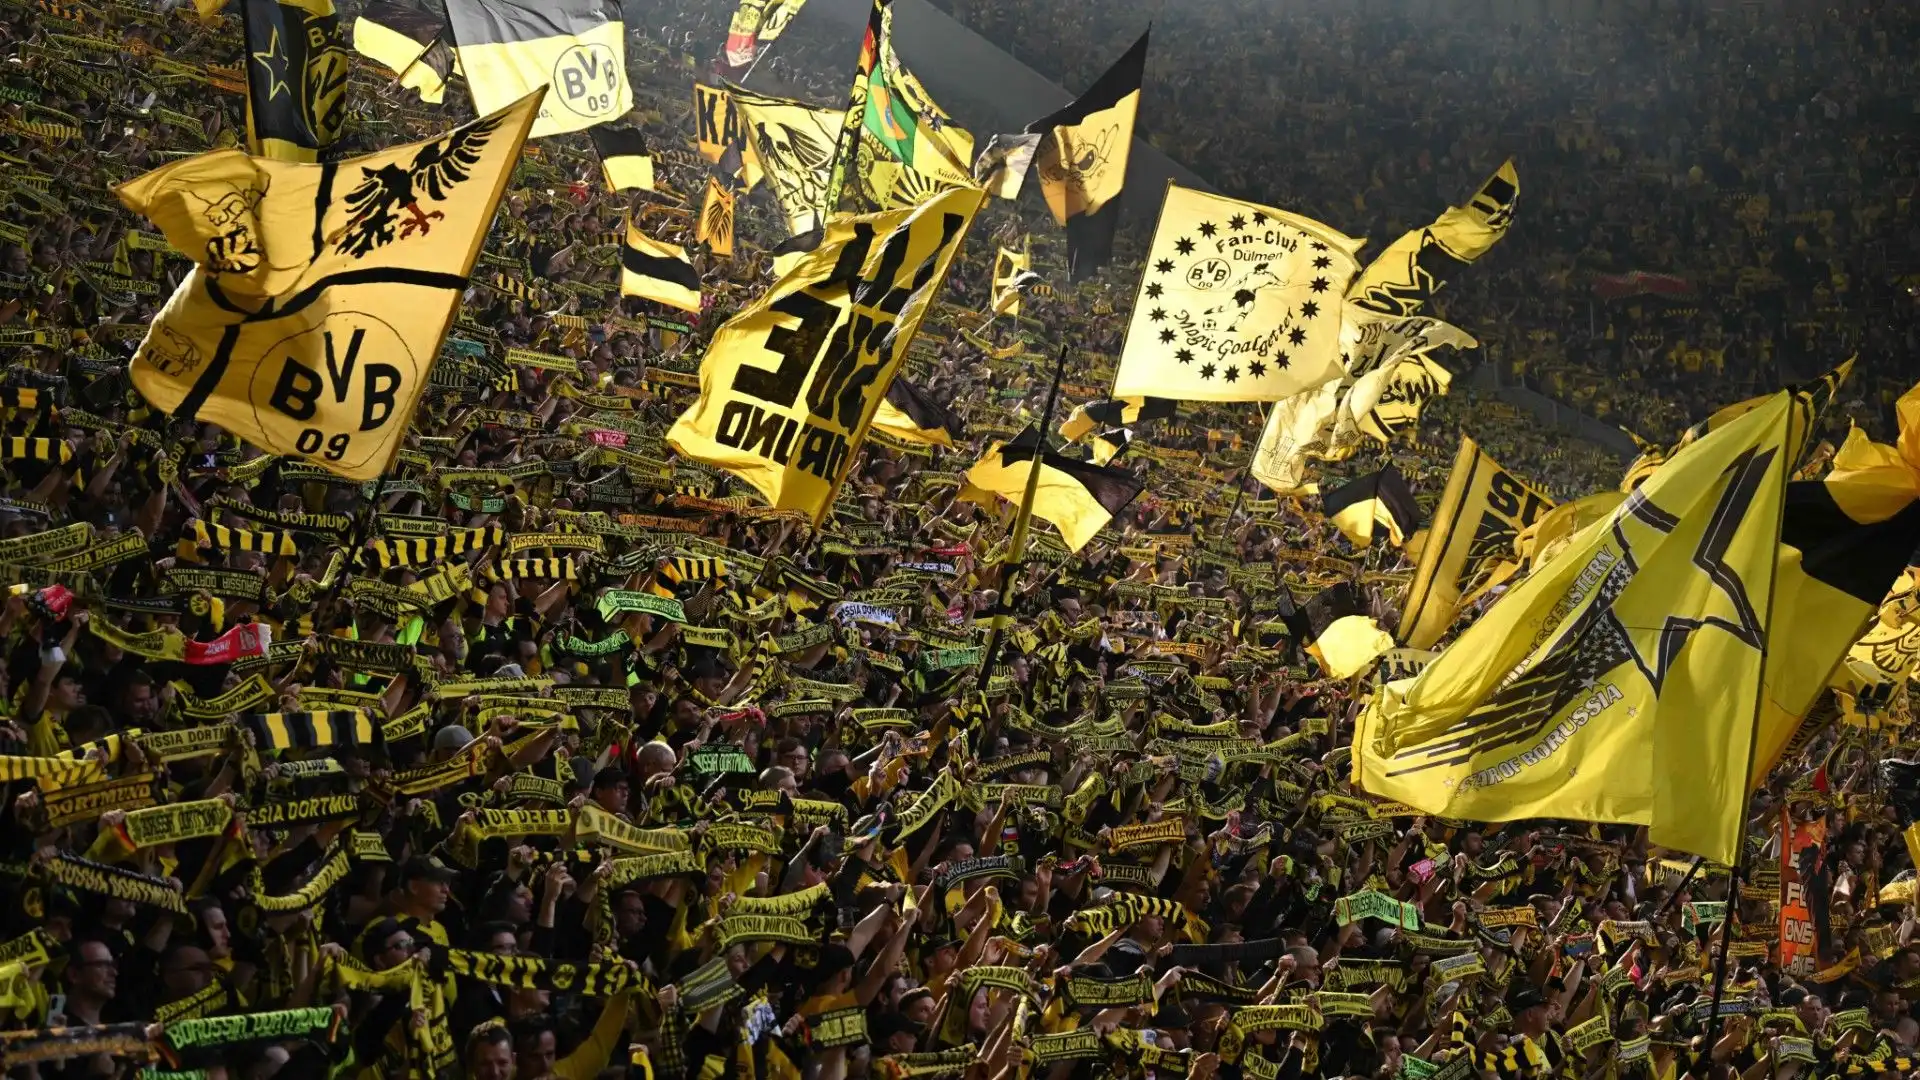 Arsenal all'assalto del diamante del Borussia Dortmund: immagini